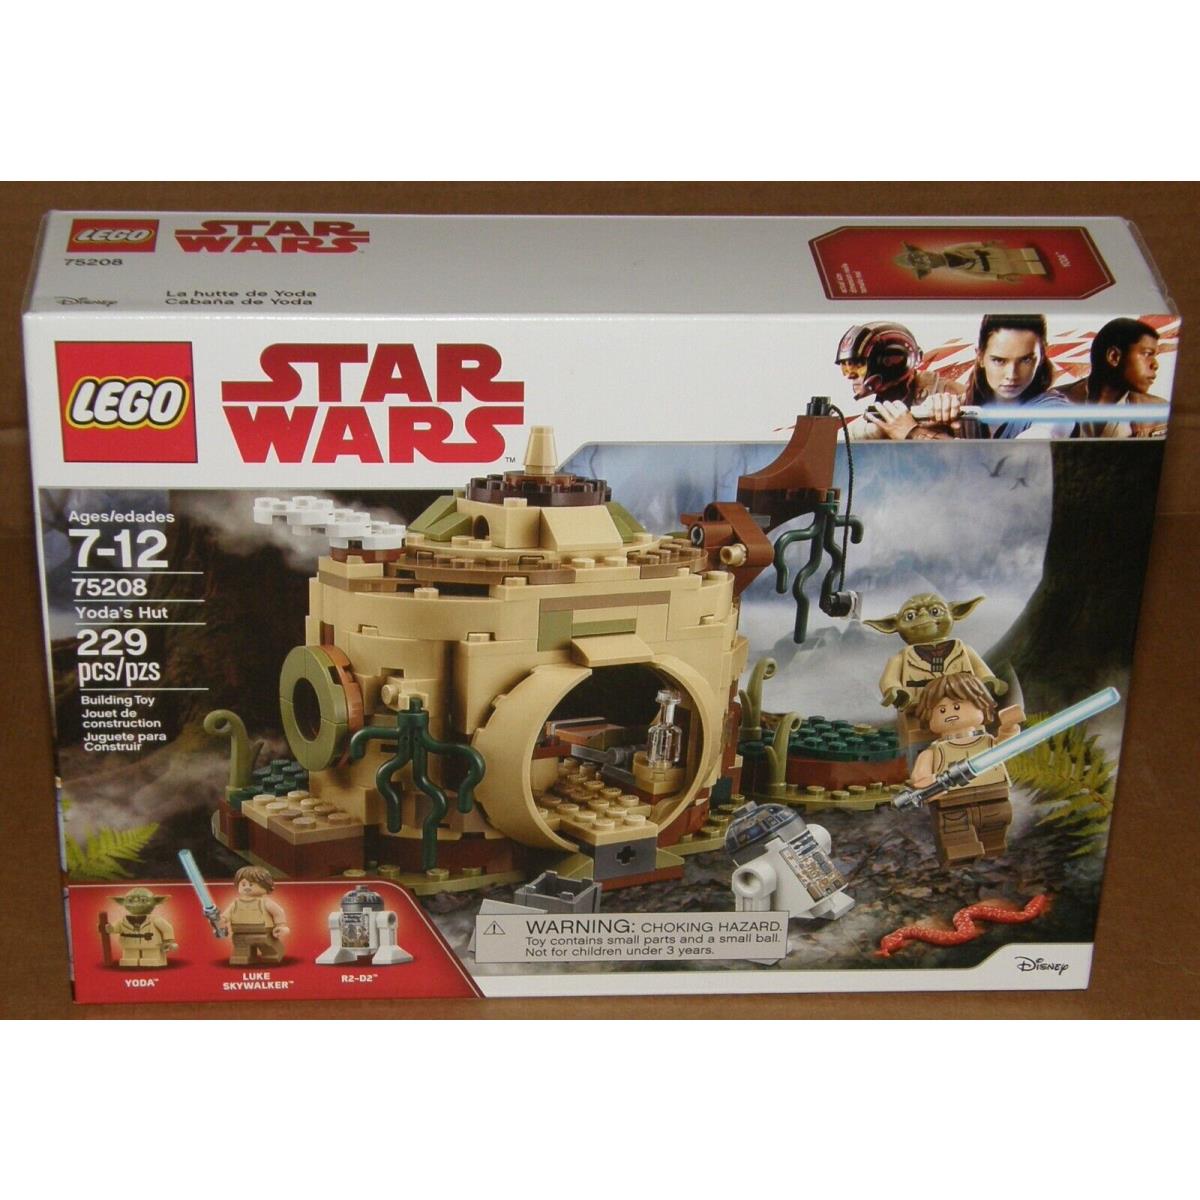 Lego 75208 Star Wars Yoda`s Hut 229 Pcs